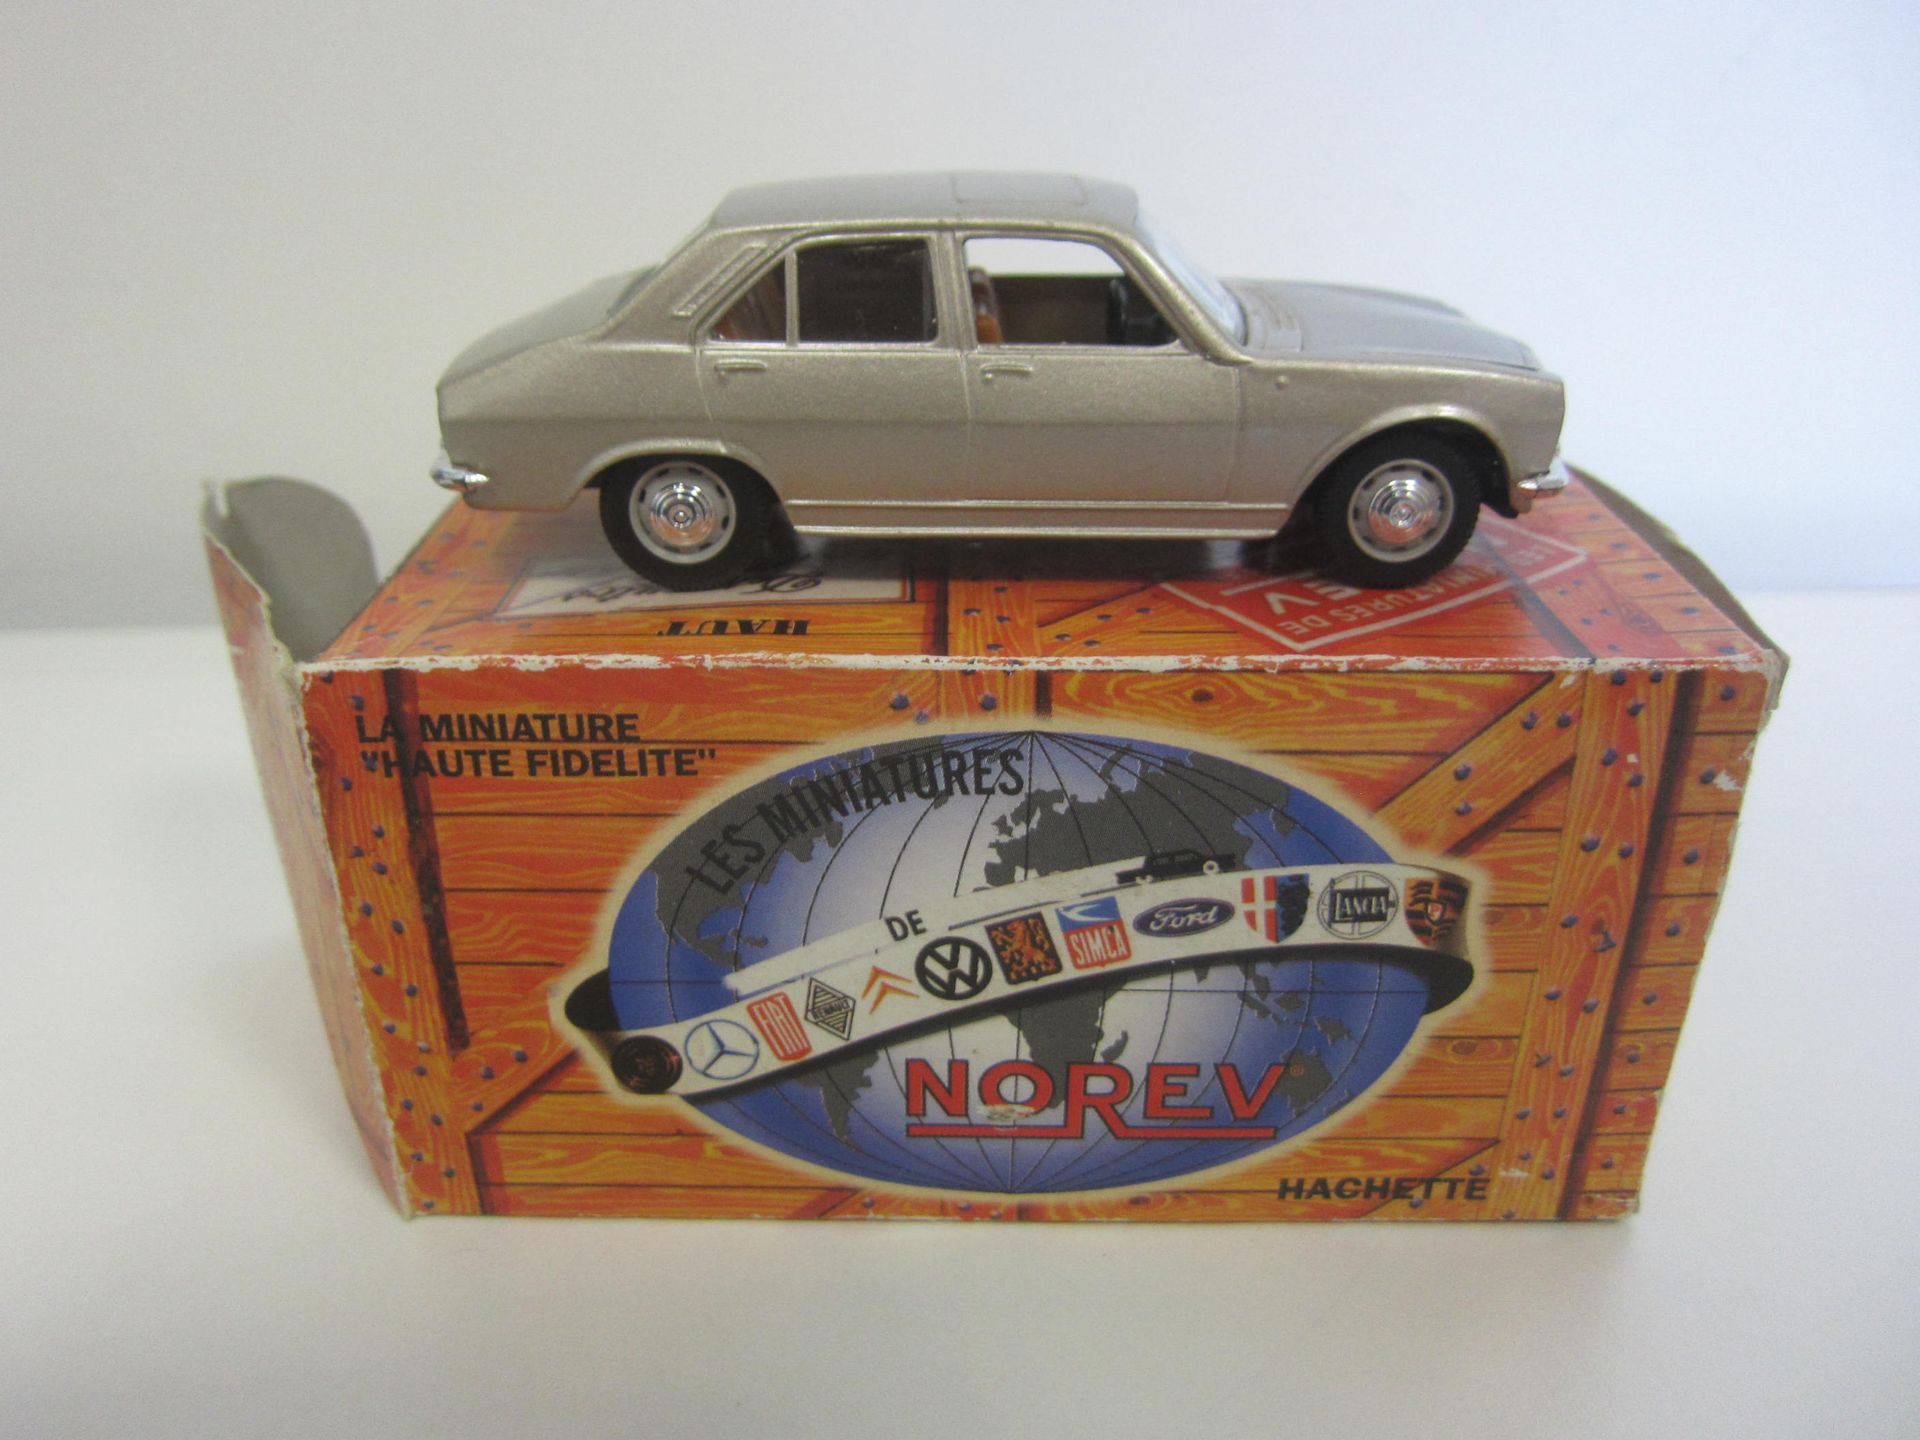 Null NOREV, Miniatur-Auto PEUGEOT 504, 1971, 1/43 in seiner Kartonschachtel